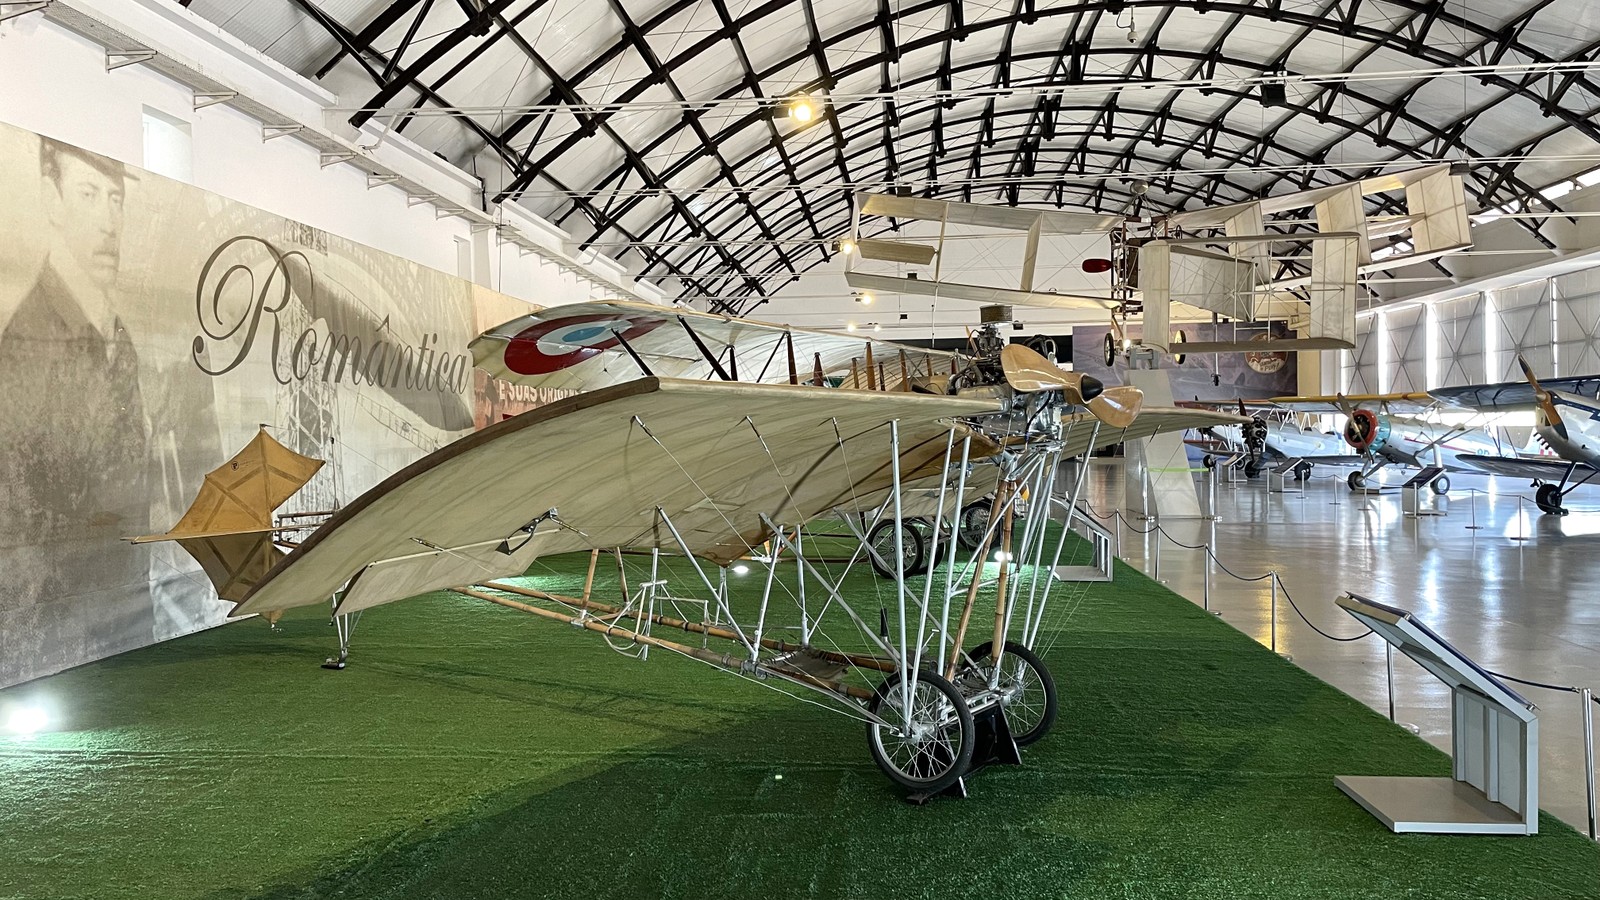 Demoiselle, outra criação de Santos Dumont, voou pela primeira vez em 16 de novembro de  1907 — Foto: Fábio Rossi